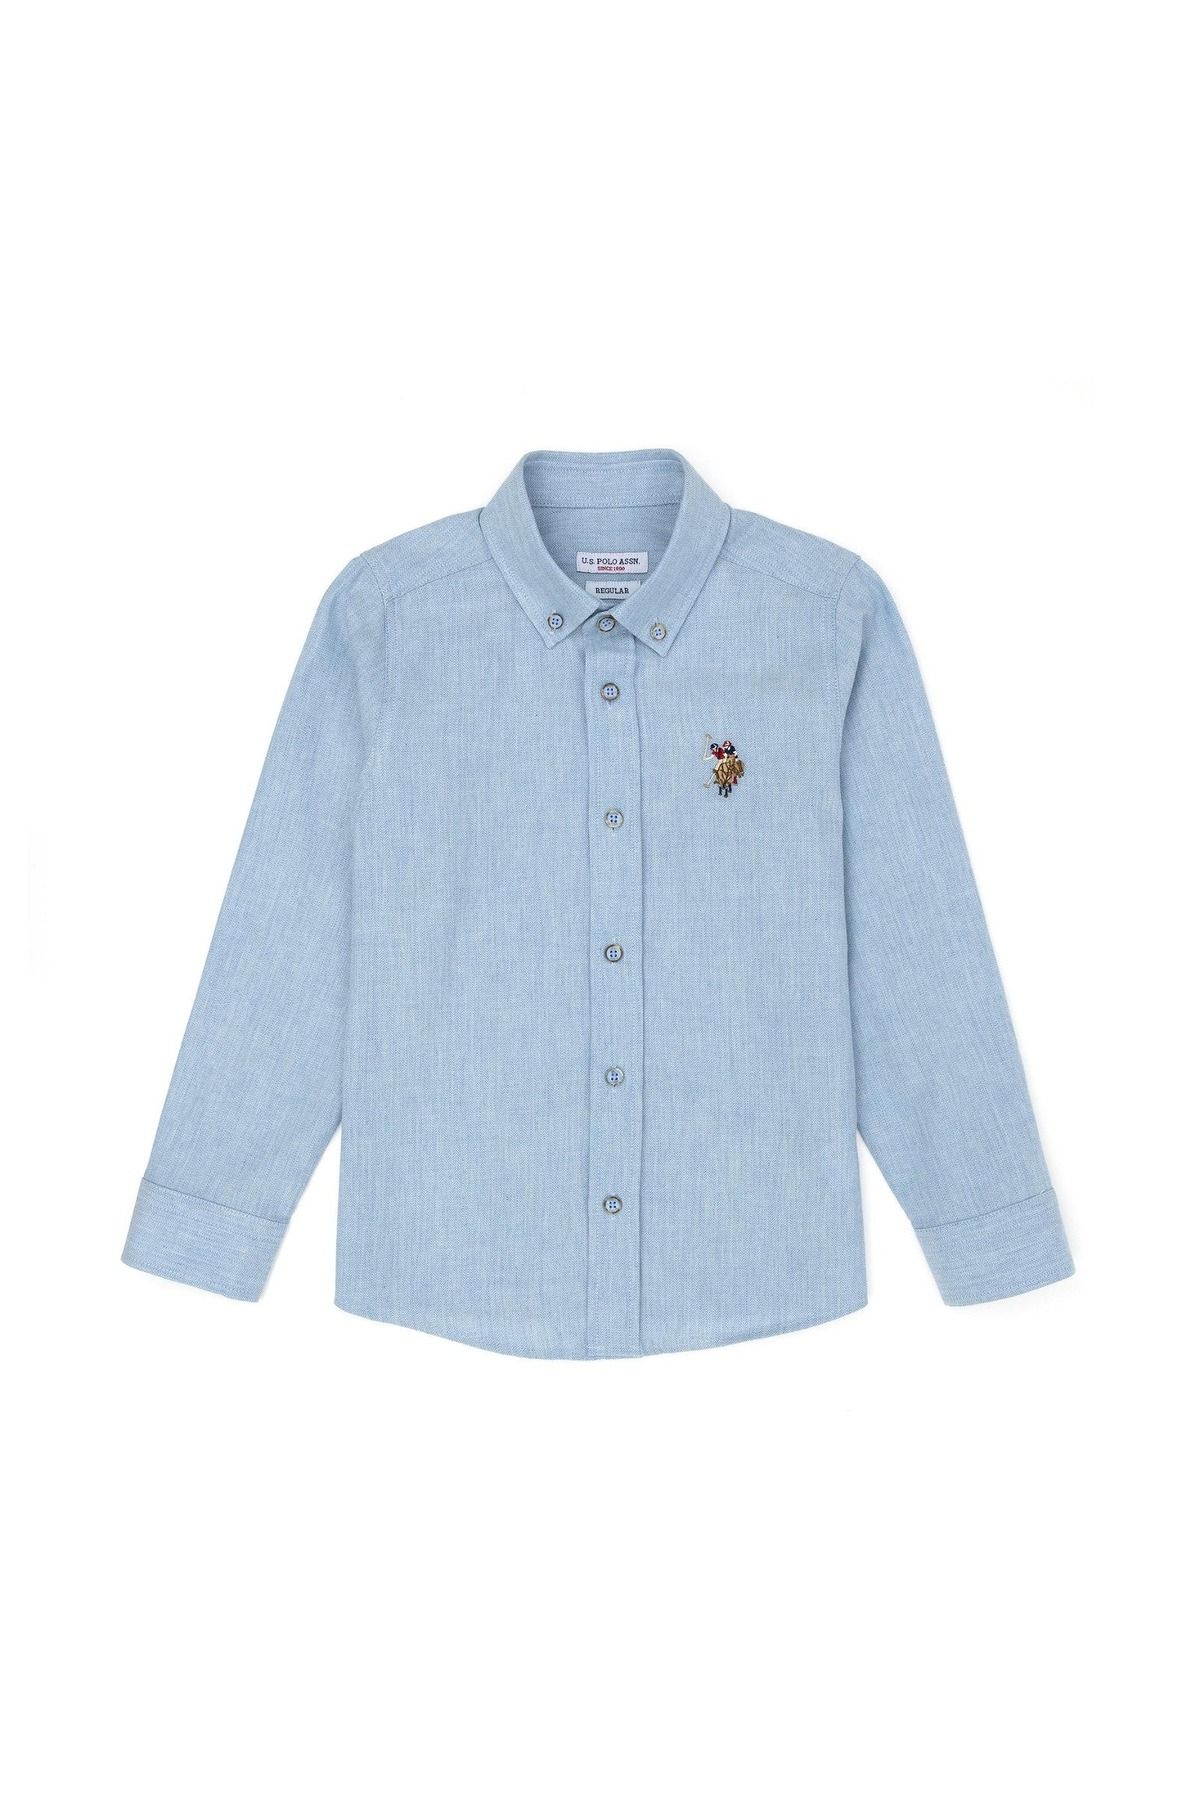 U.S. Polo Assn. Erkek Çocuk Açık Mavi Uzun Kollu Gömlek ELİFSU BUTİKHOME